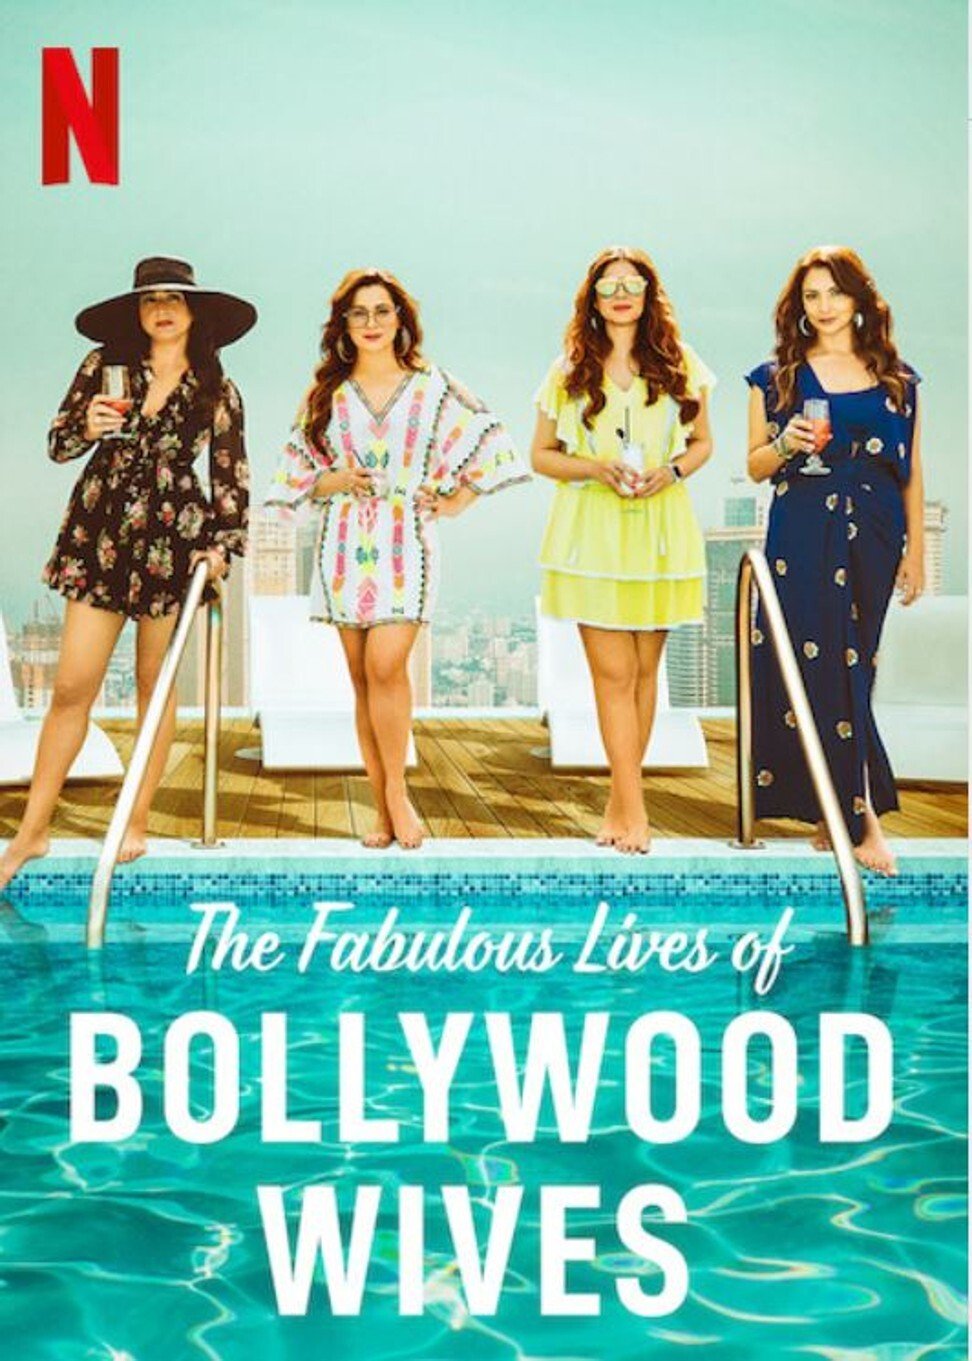 ดูหนังออนไลน์ฟรี Fabulous Lives of Bollywood Wives Season 1 Ep02 แฟบูลูส ไลฟ์ ออฟ บอลลีวู๊ด ไวส์ท ปี1 ตอนที่2